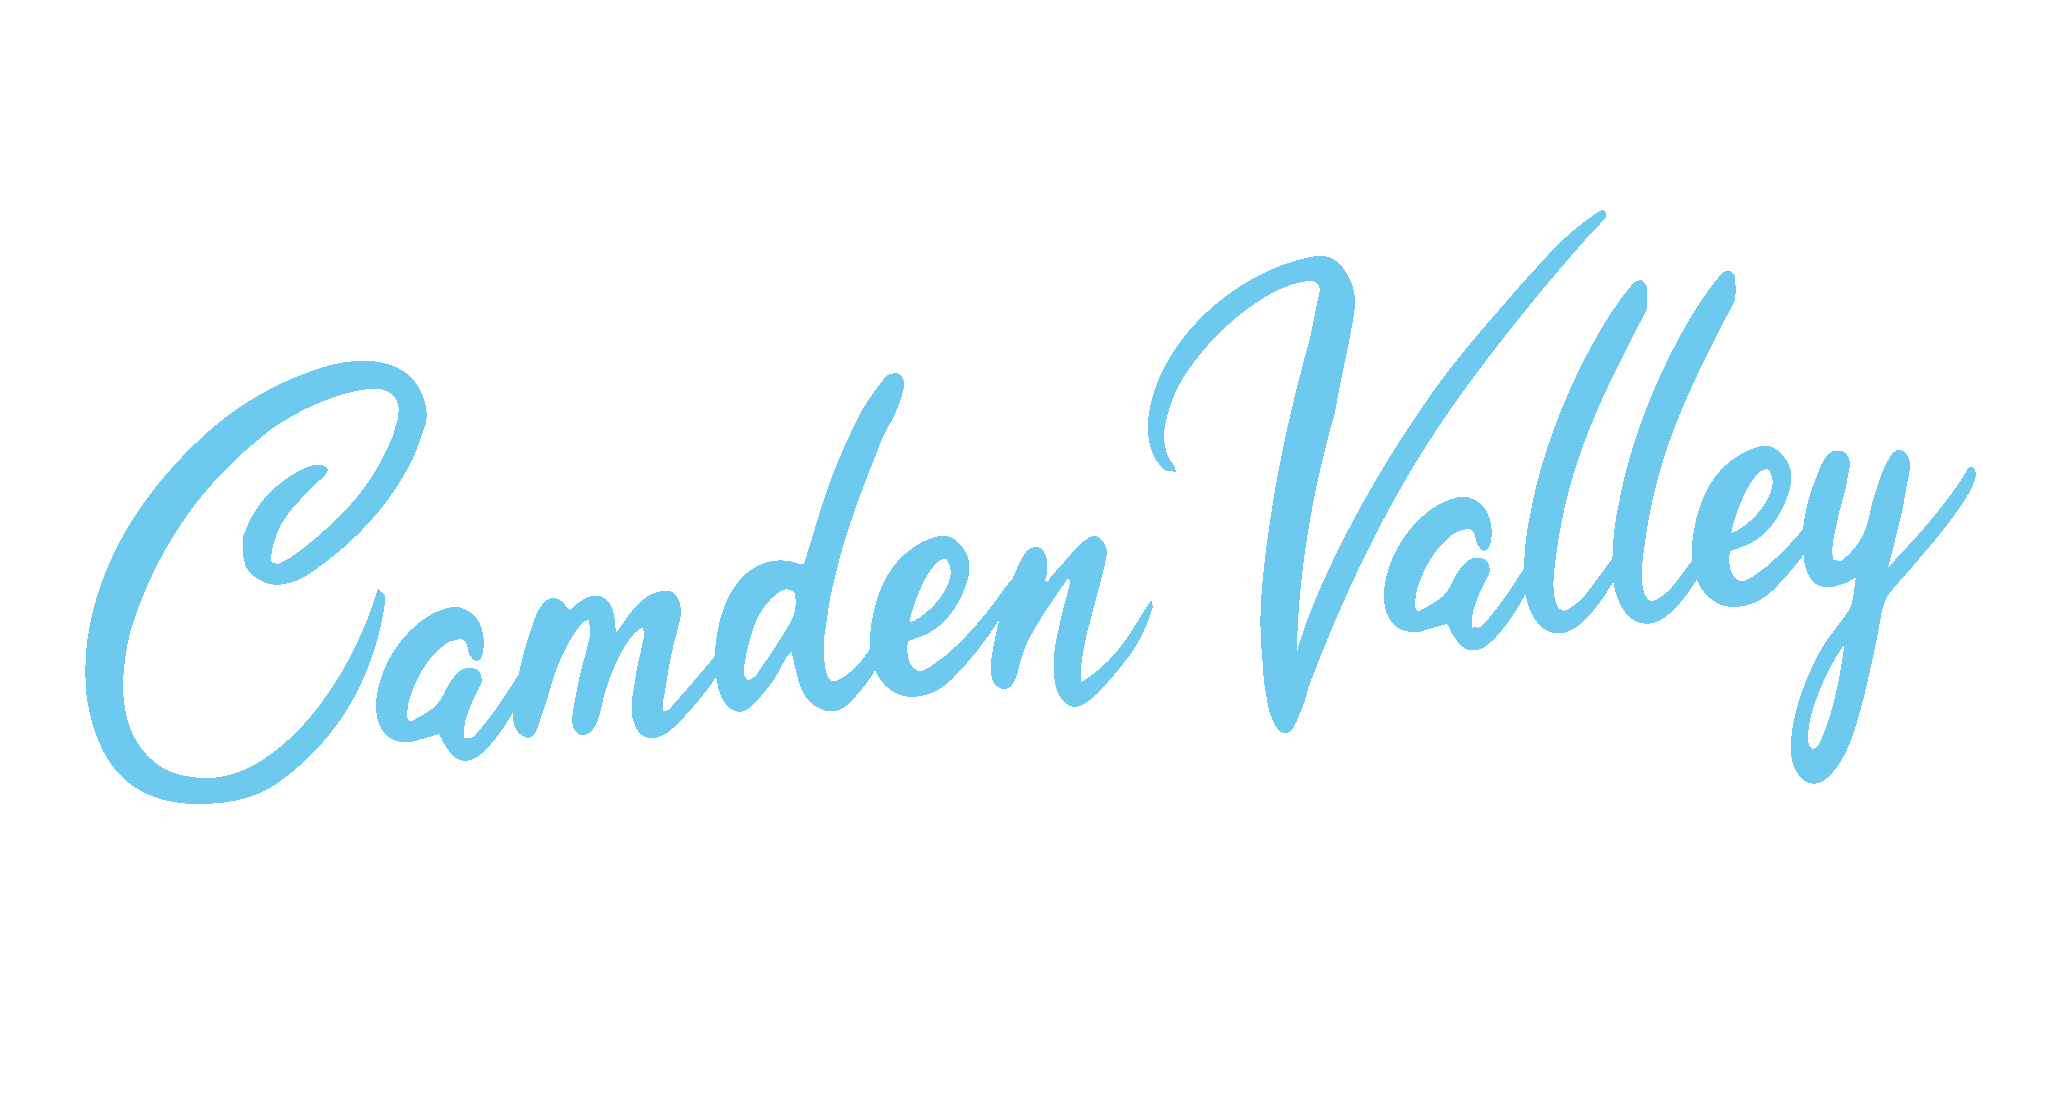 Camden Valley Meats